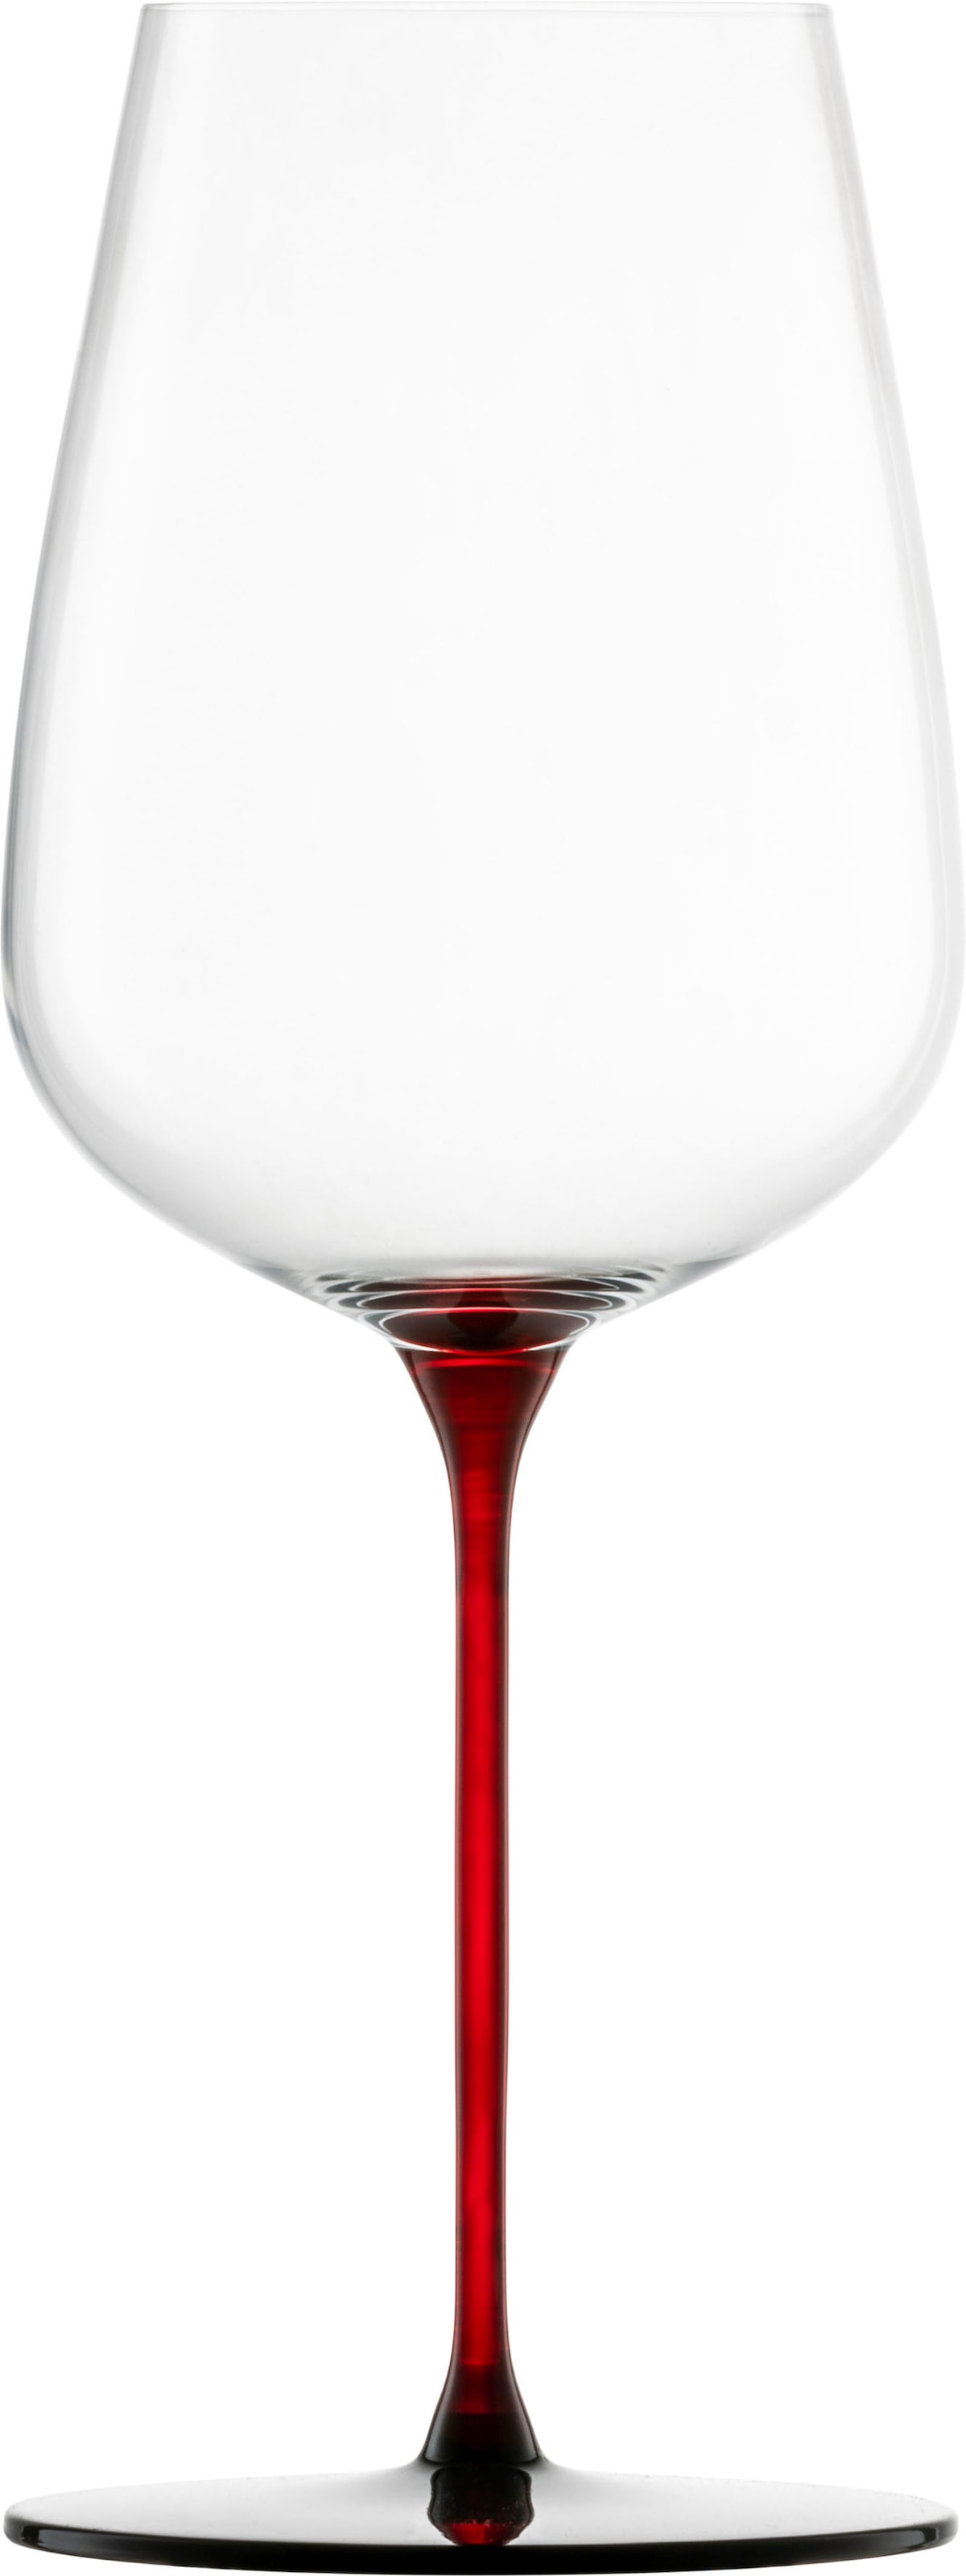 Eisch Weinglas »RED SENSISPLUS«, (Set, 2 tlg., 2 Gläser im Geschenkkarton), 580 ml, 2-teilig, Made in Germany